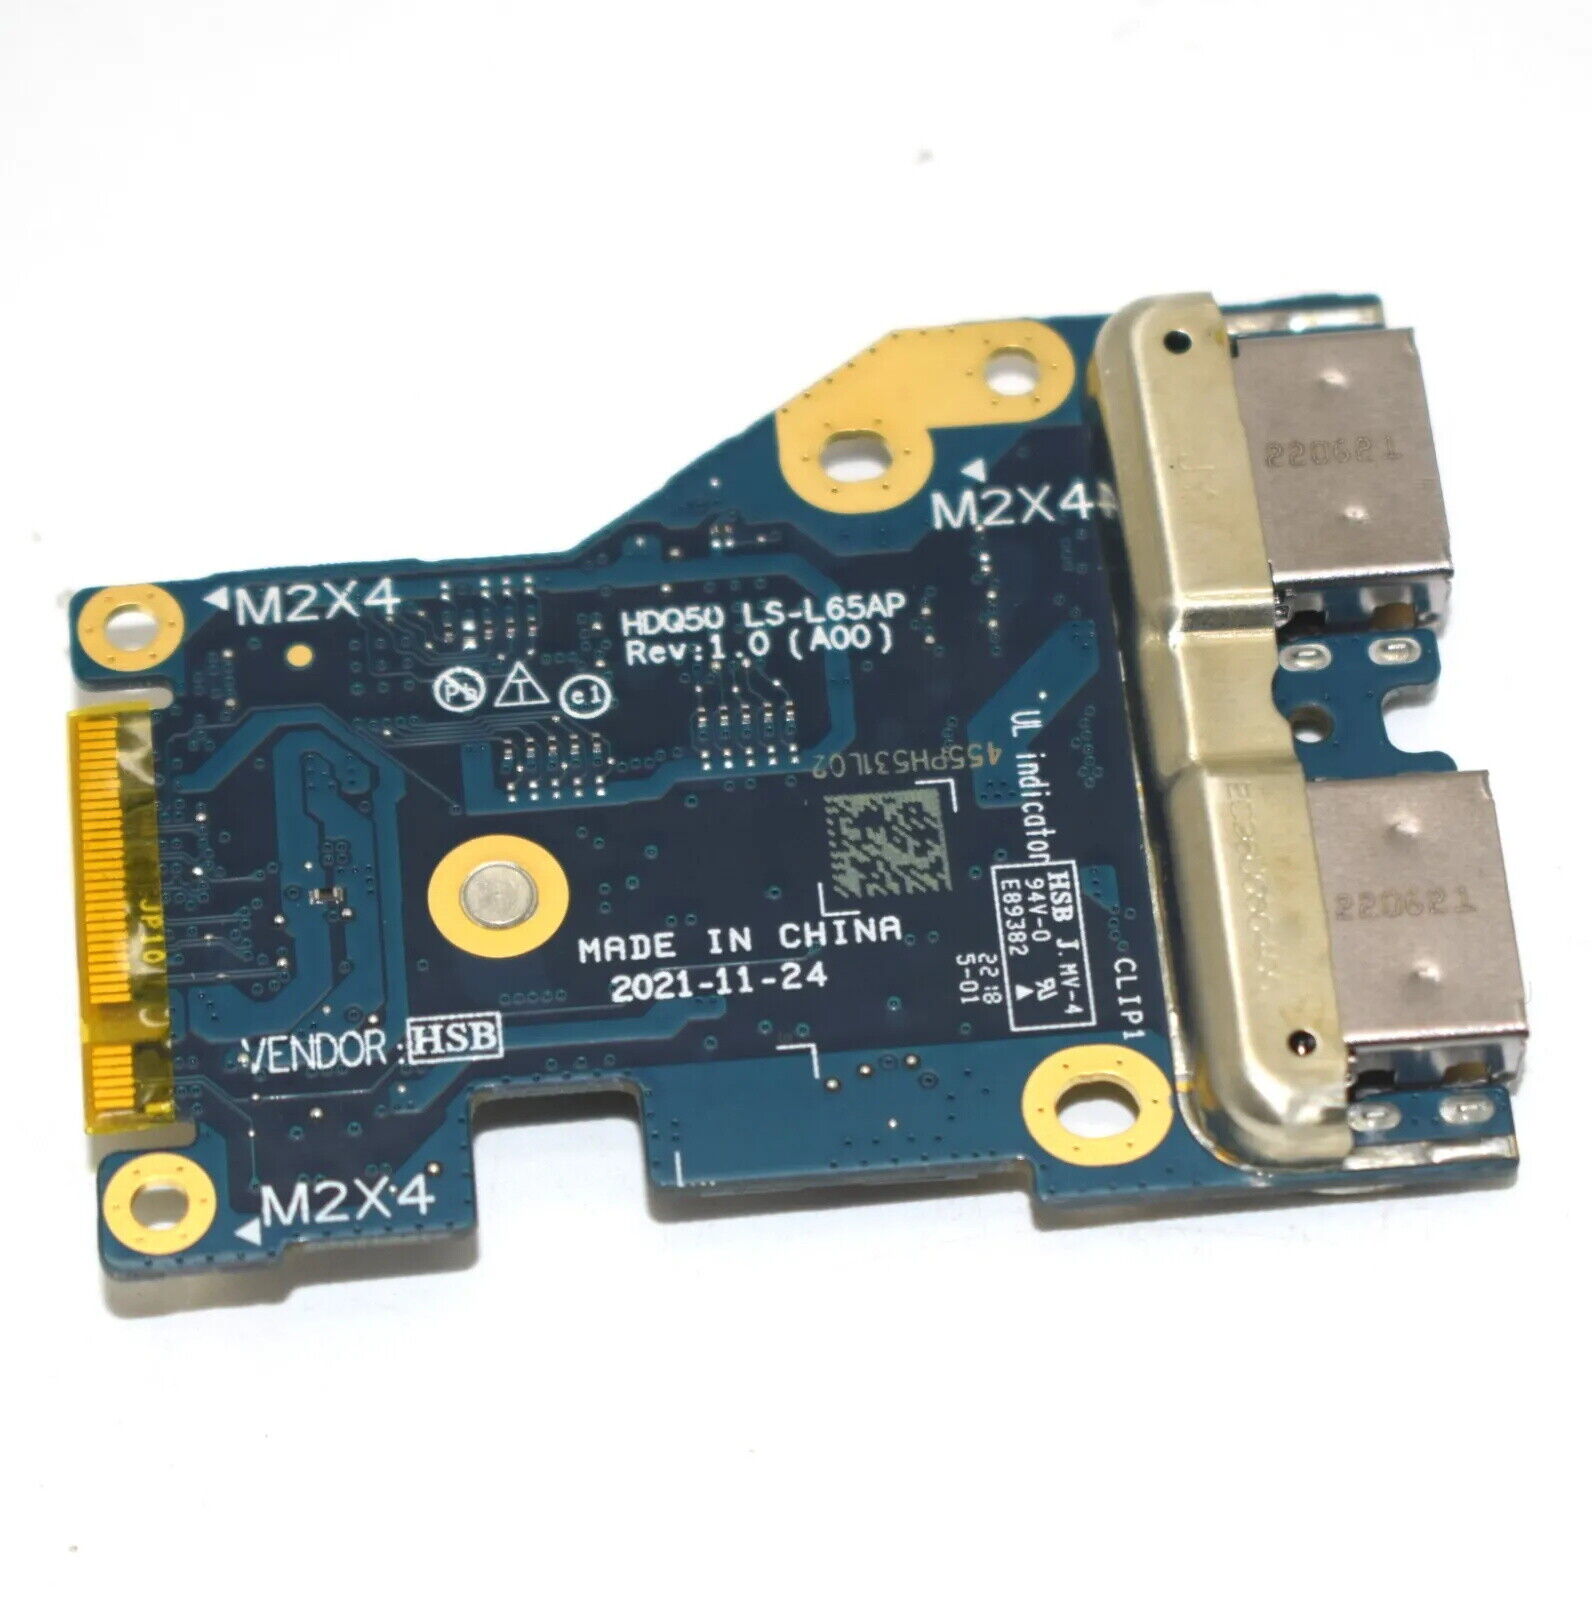 New For Dell Alienware M15 R7 HDQ50 USB I/O Board LS-L65AP